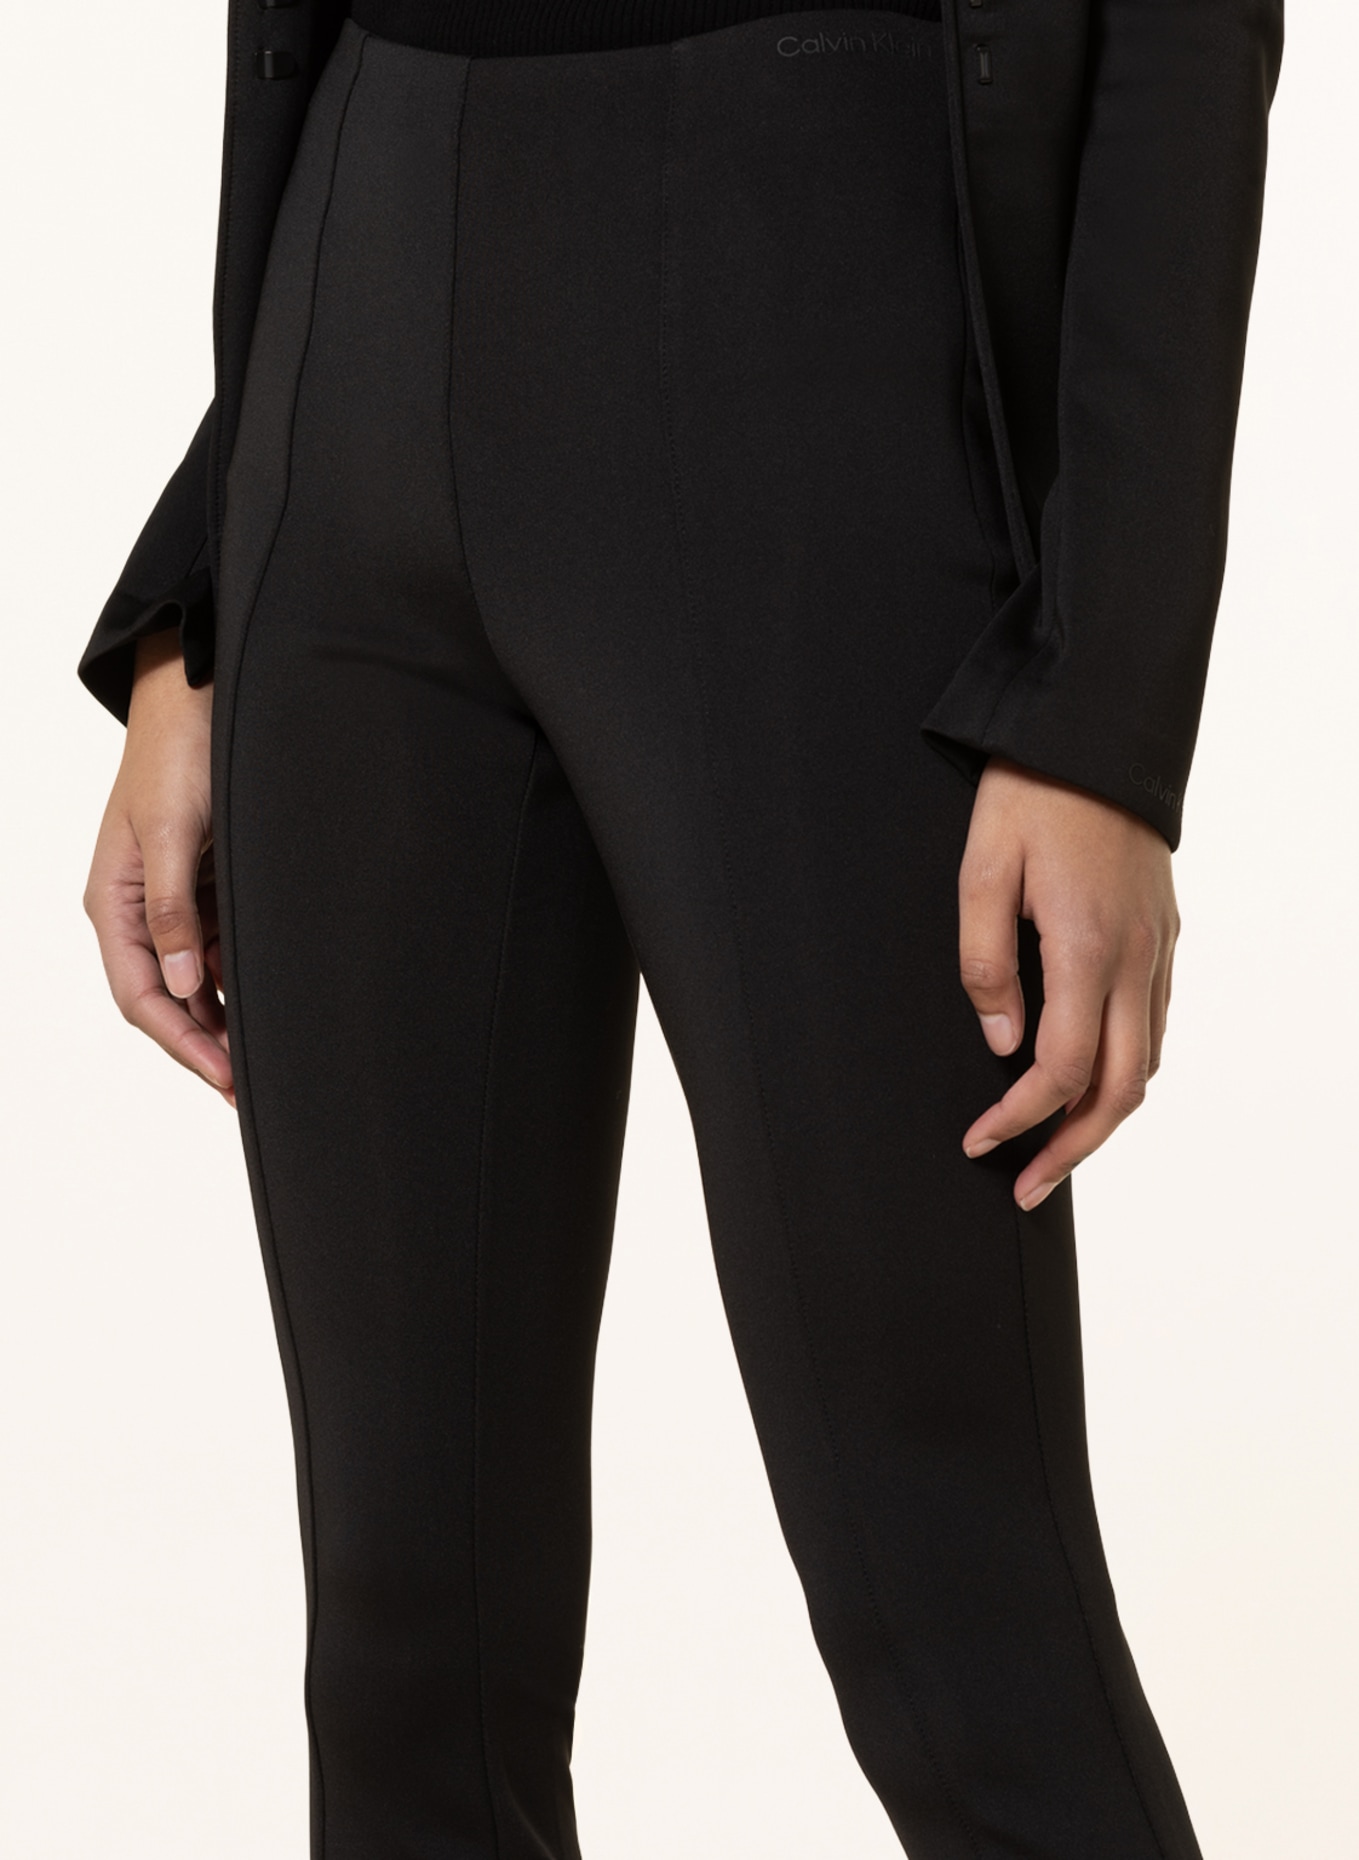 Calvin Klein Performance logo waist legging short co-ord in black